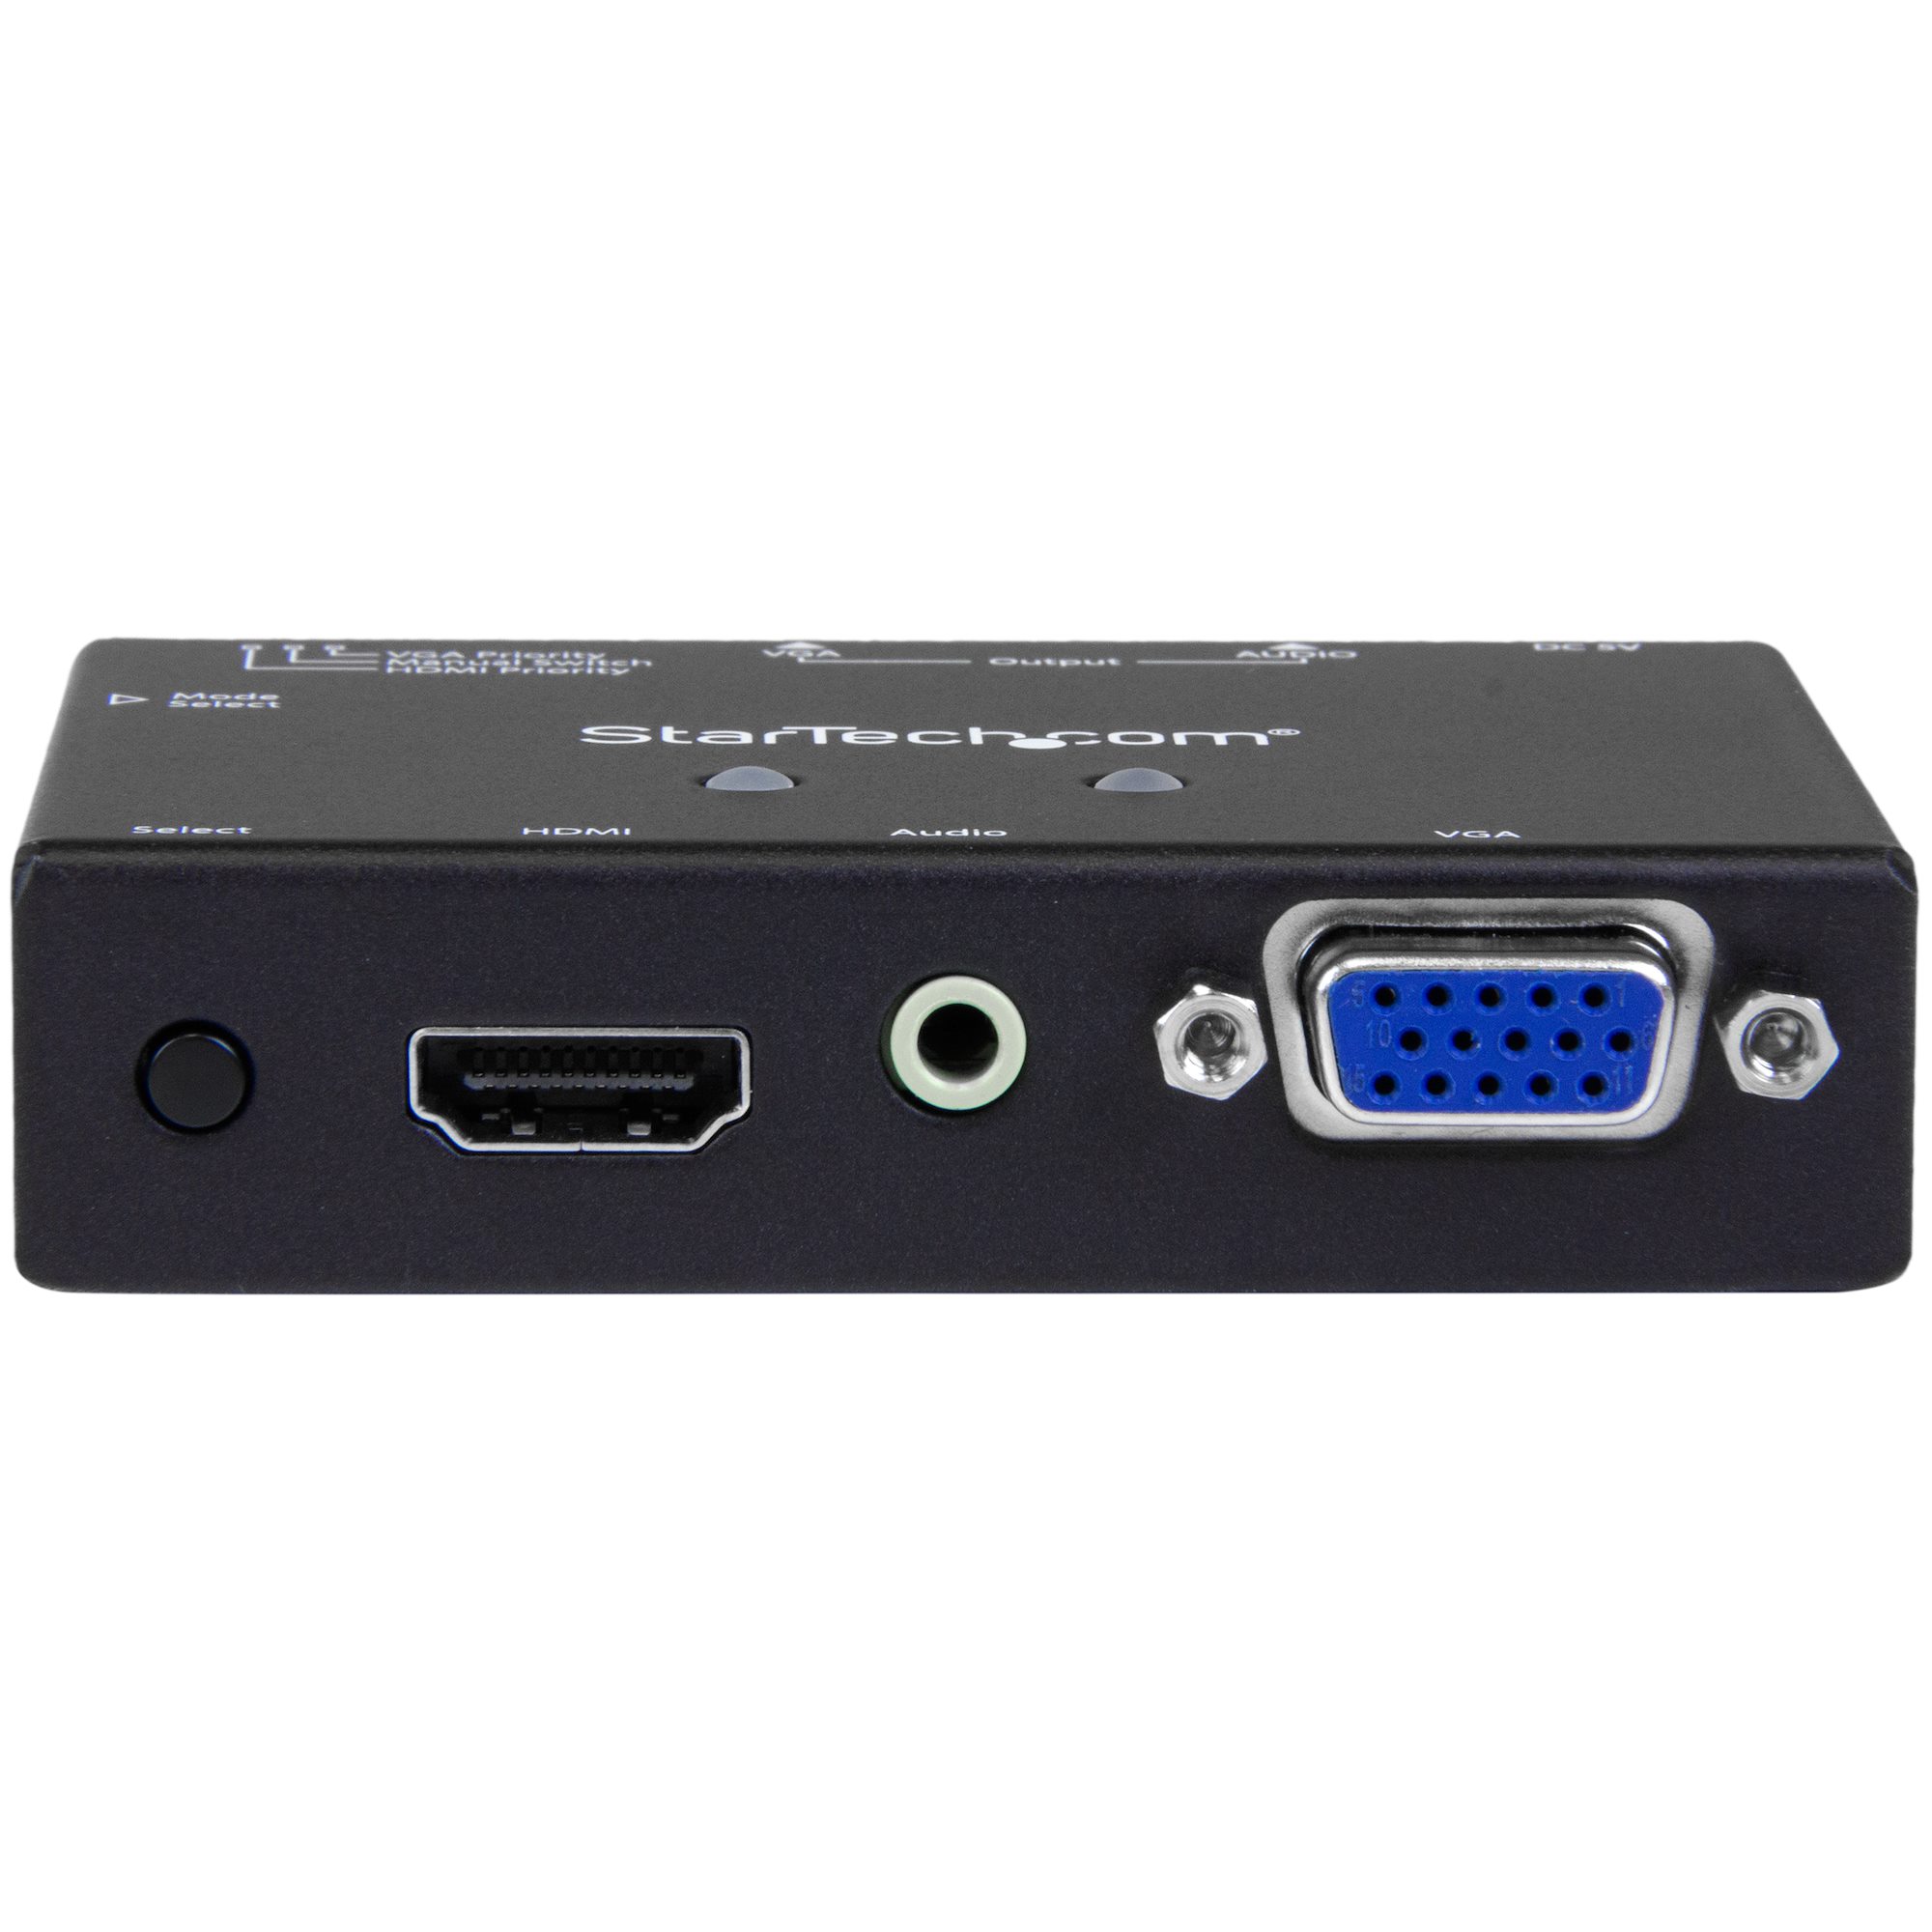 2入力(HDMI/VGA)1出力(HDMI)対応ビデオ切替器スイッチャー 自動優先切替機能搭載 1080p VS 